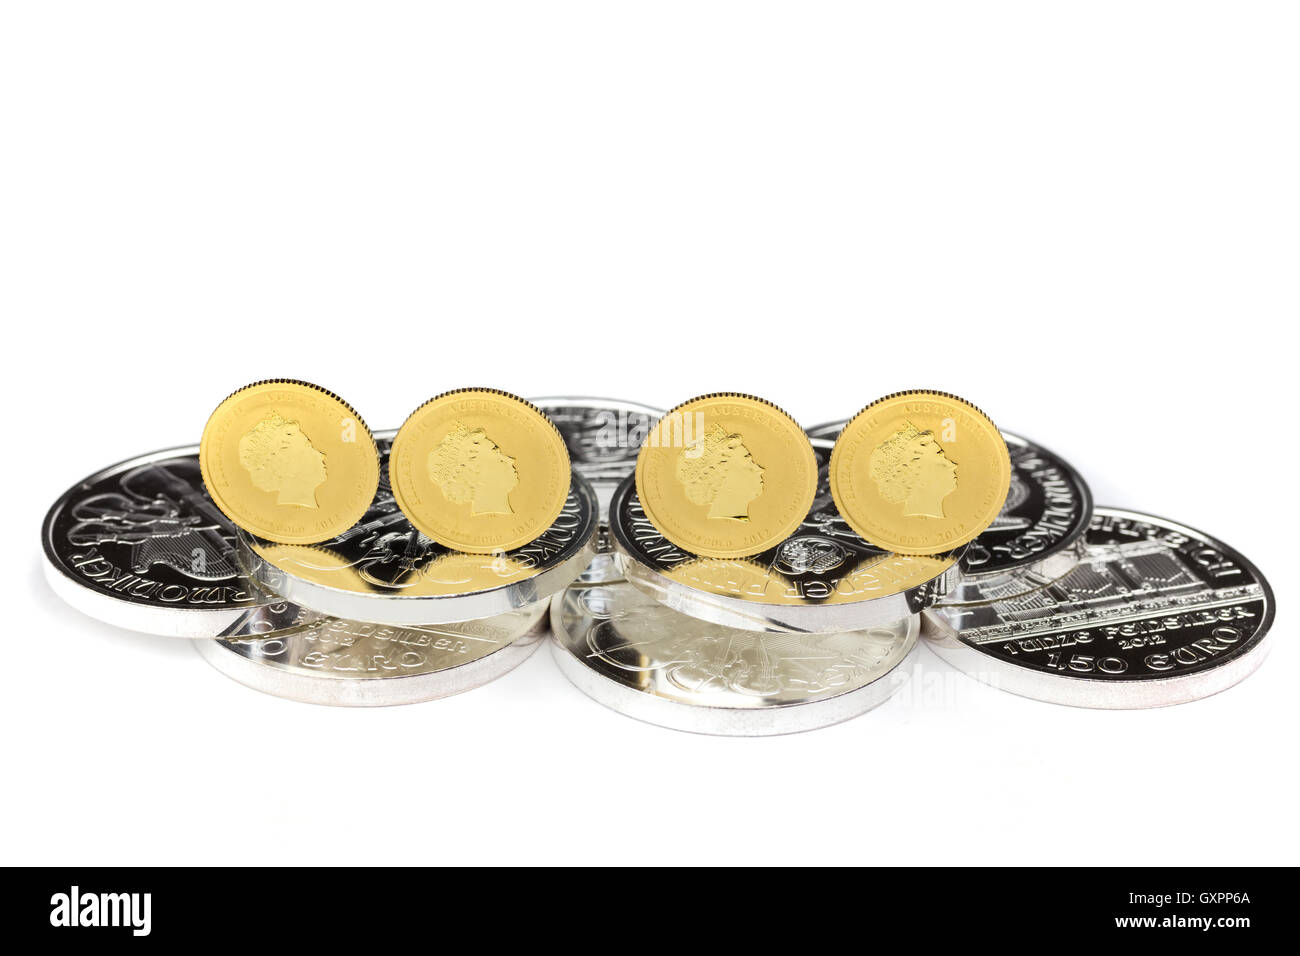 Auf Silbermünzen isoliert auf weißem Hintergrund stehen vier gold-Münzen Stockfoto